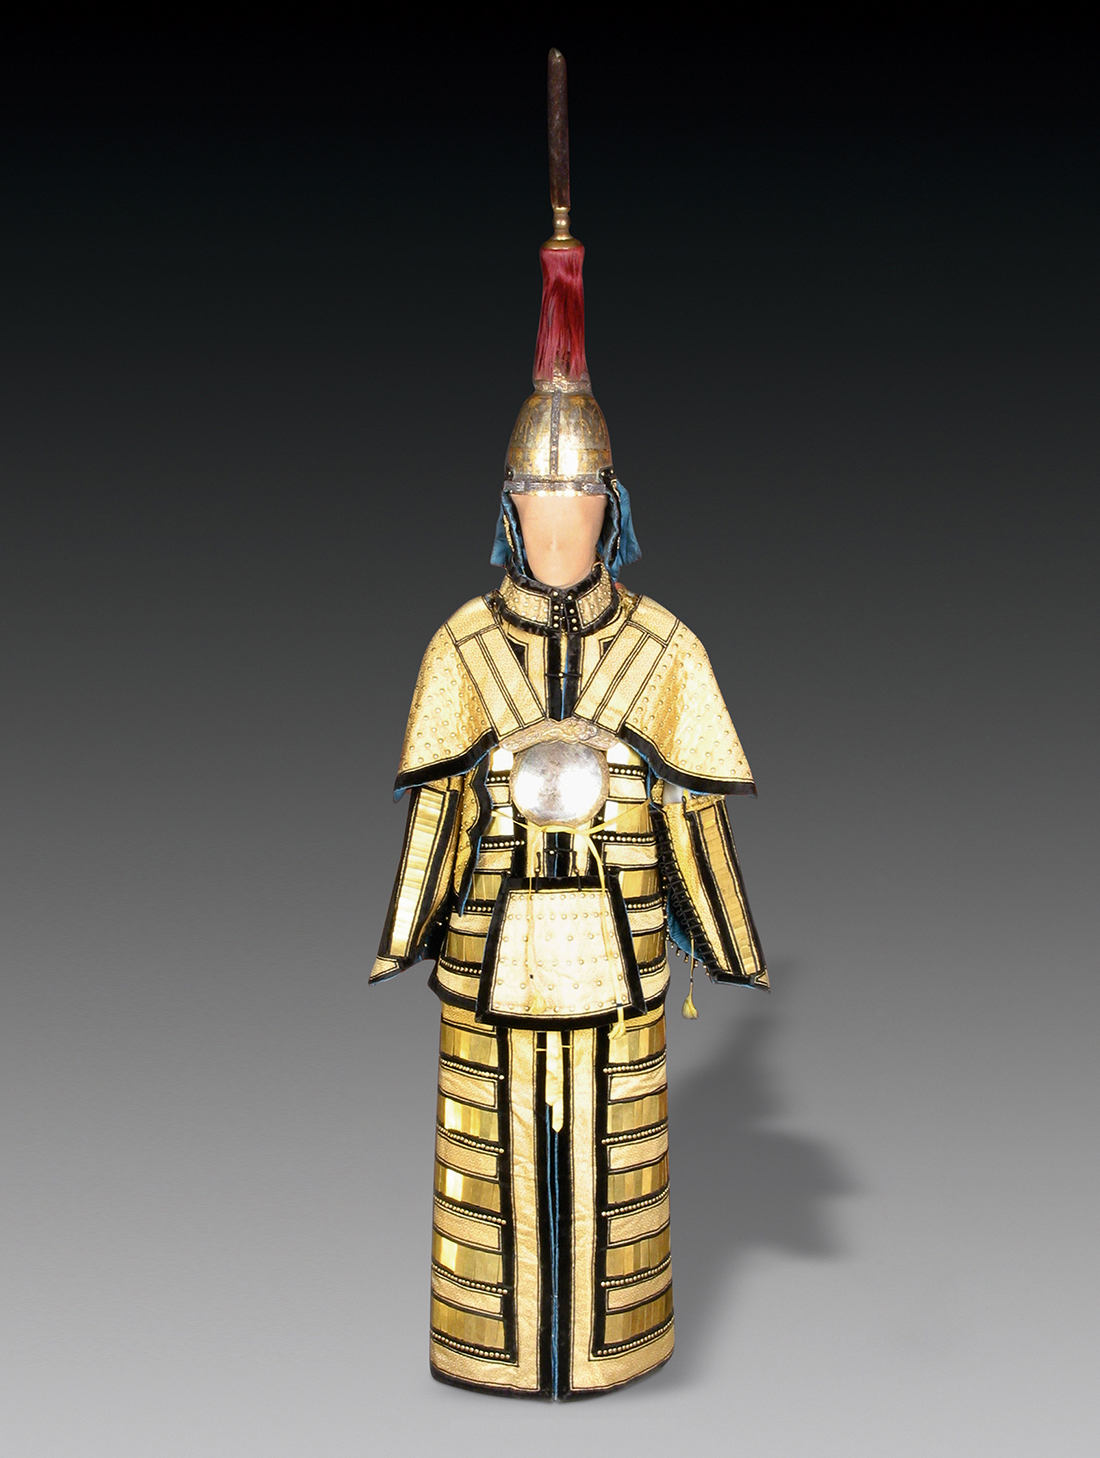 努尔哈赤的剑 皇太极的刀 顺治的弓 乾隆的甲胄——沈阳故宫藏清帝御用兵器选介